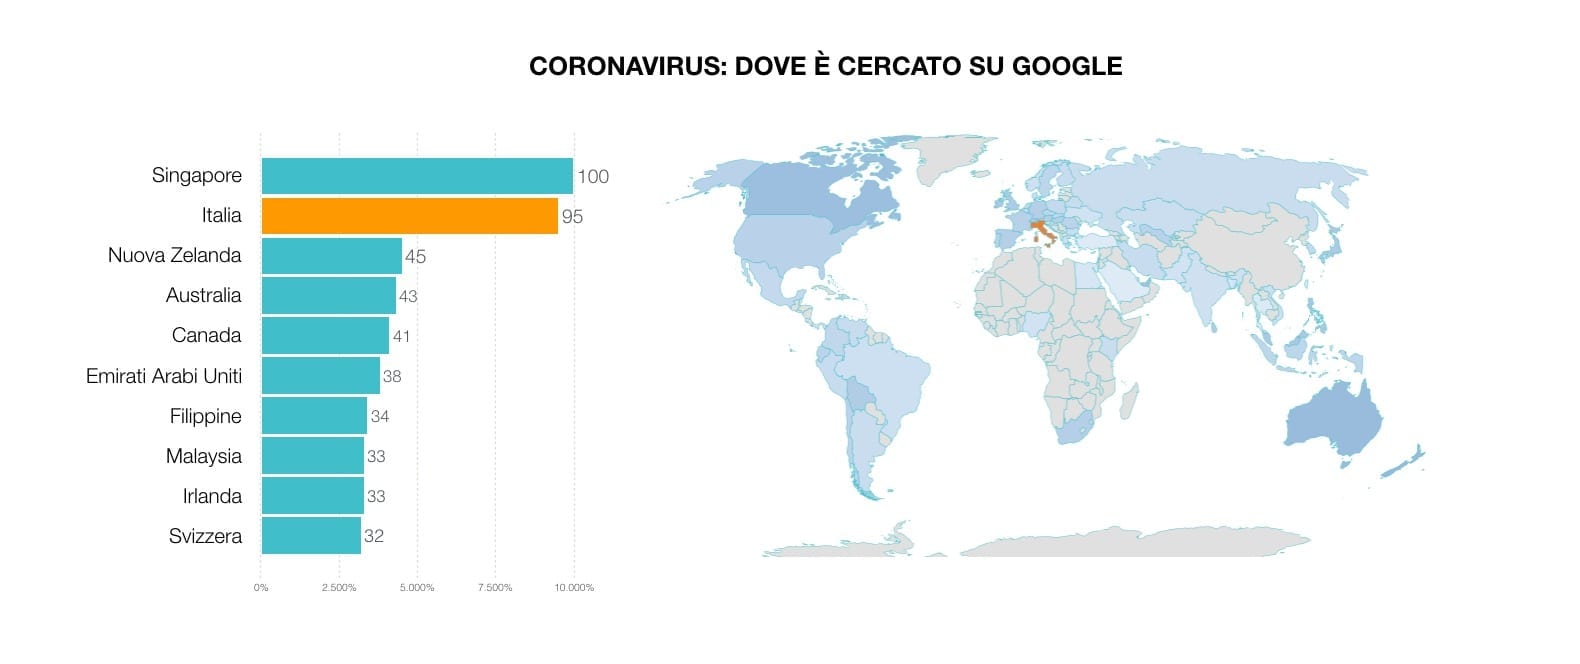 ricerche su google per paese coronavirus